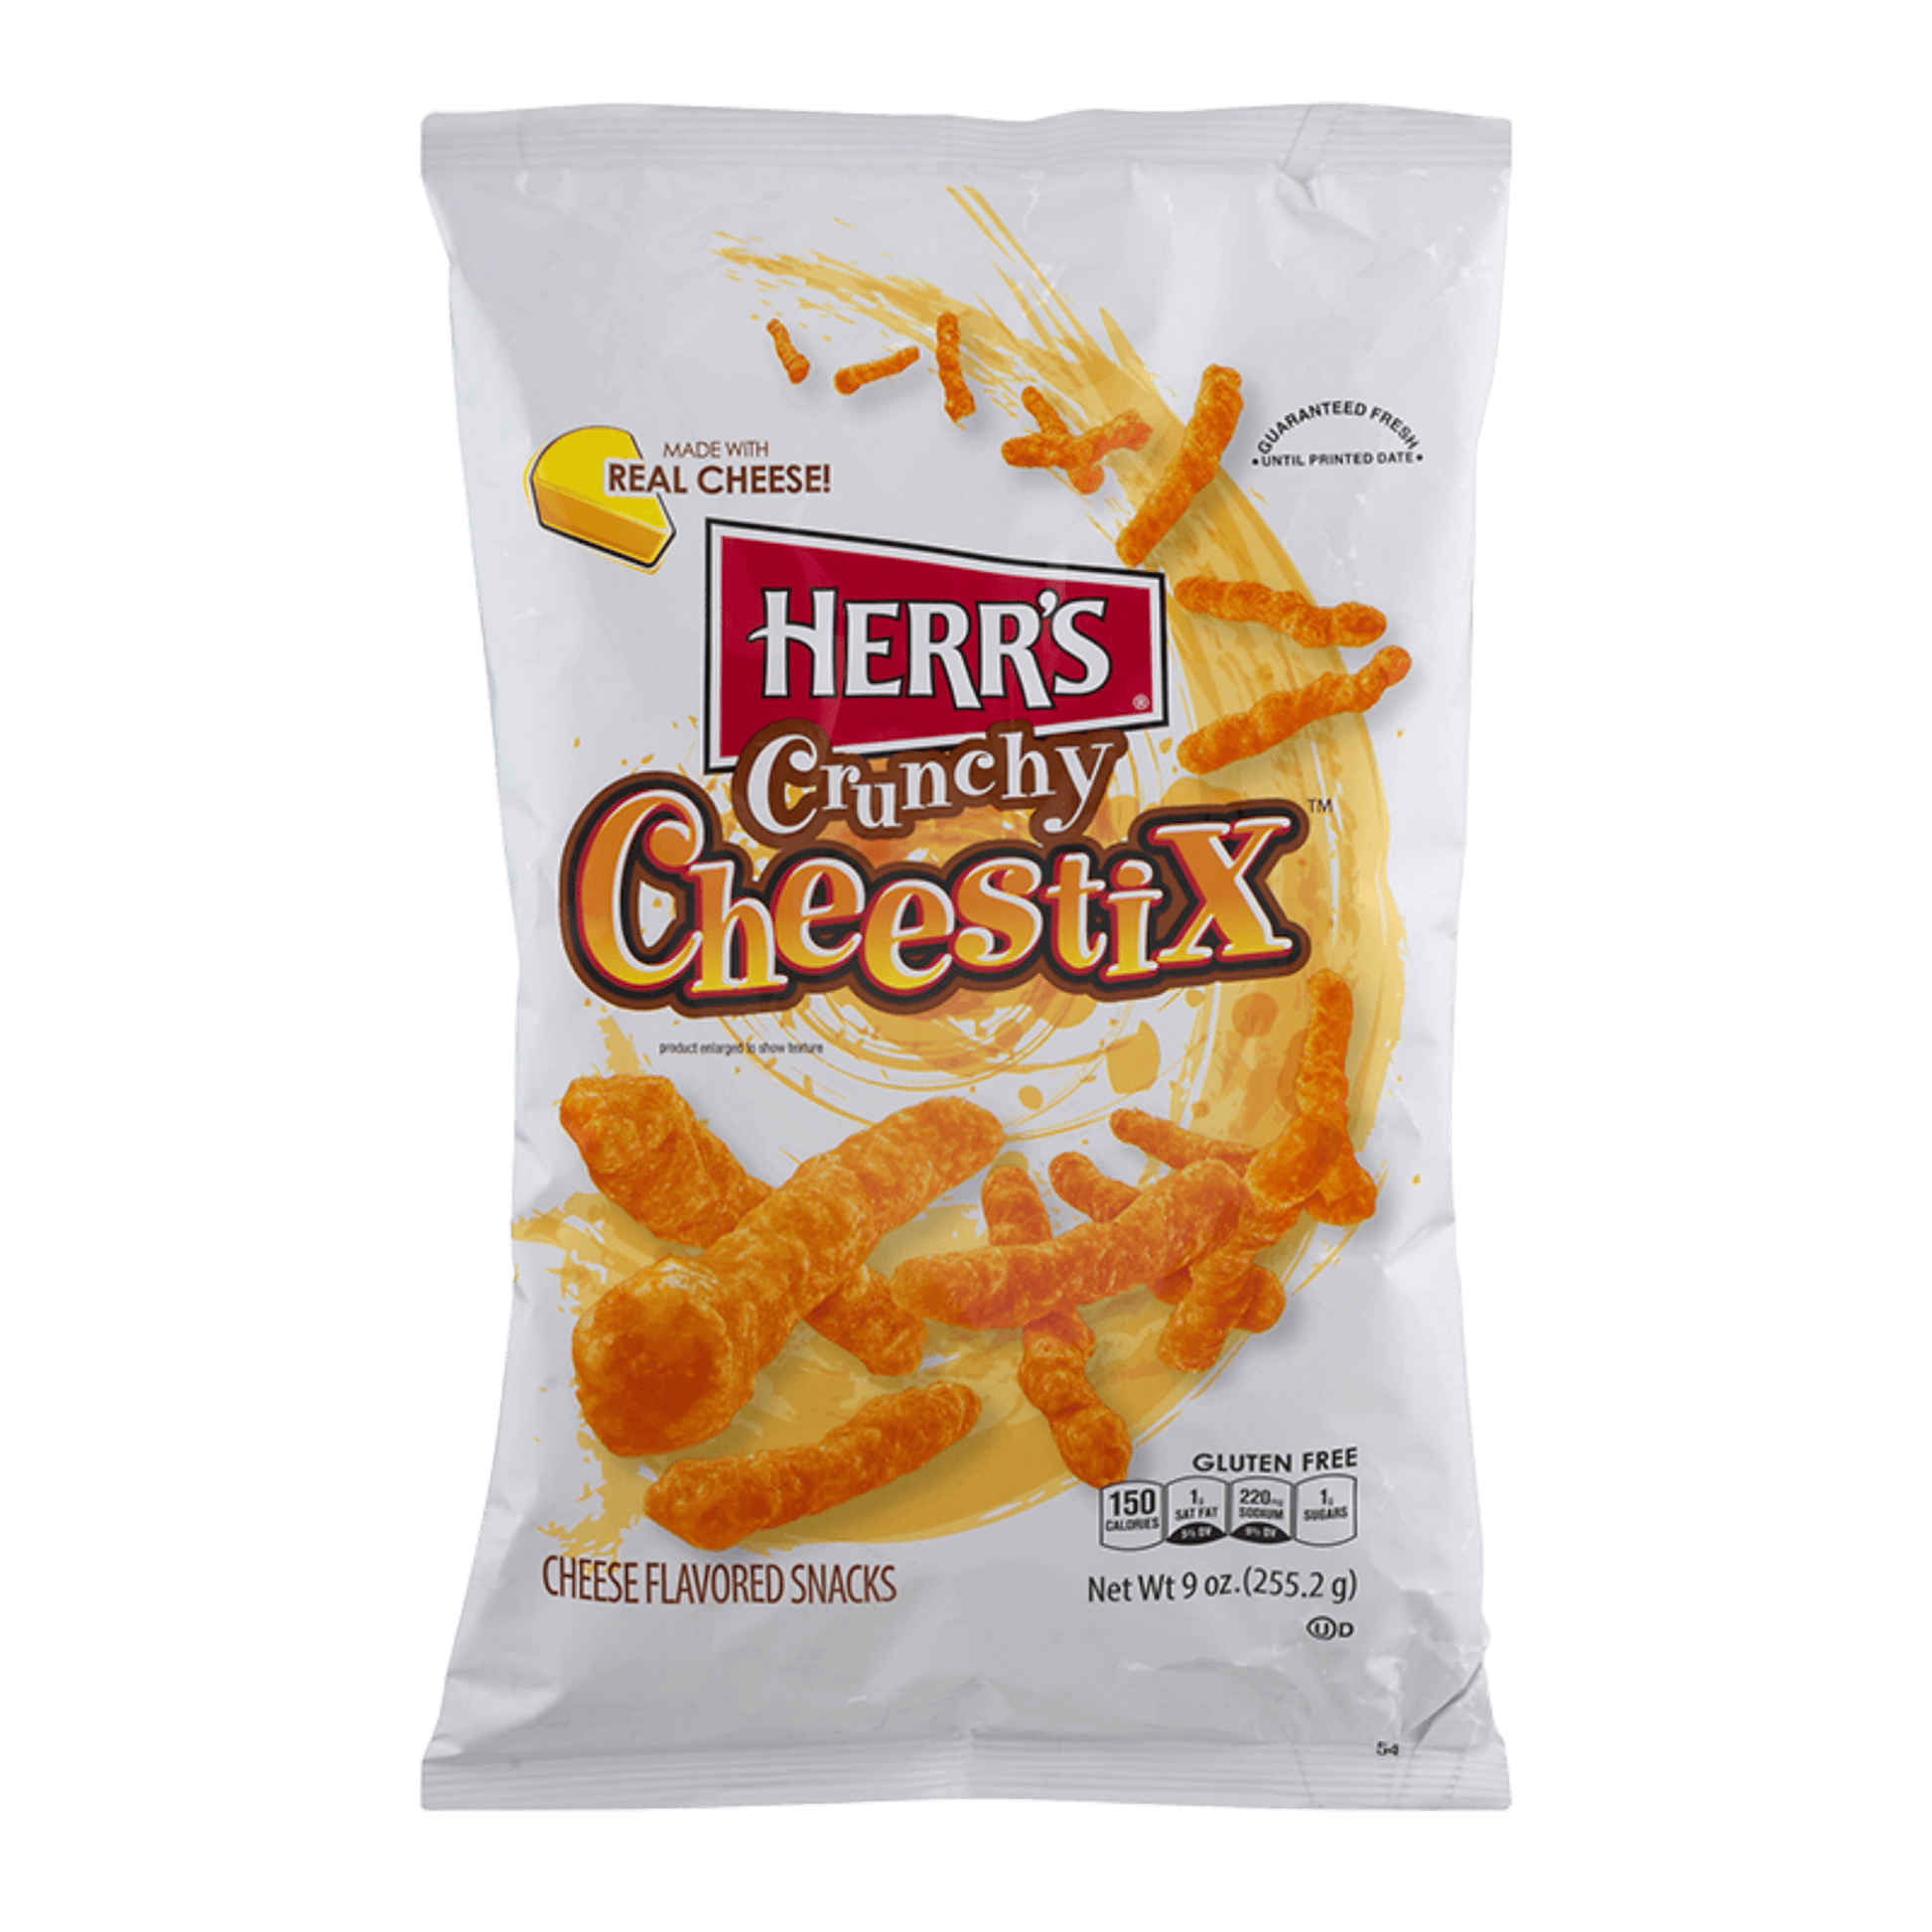 Herr's | Cheestix Crunchy Cheese (255.2g) - Scran.ie